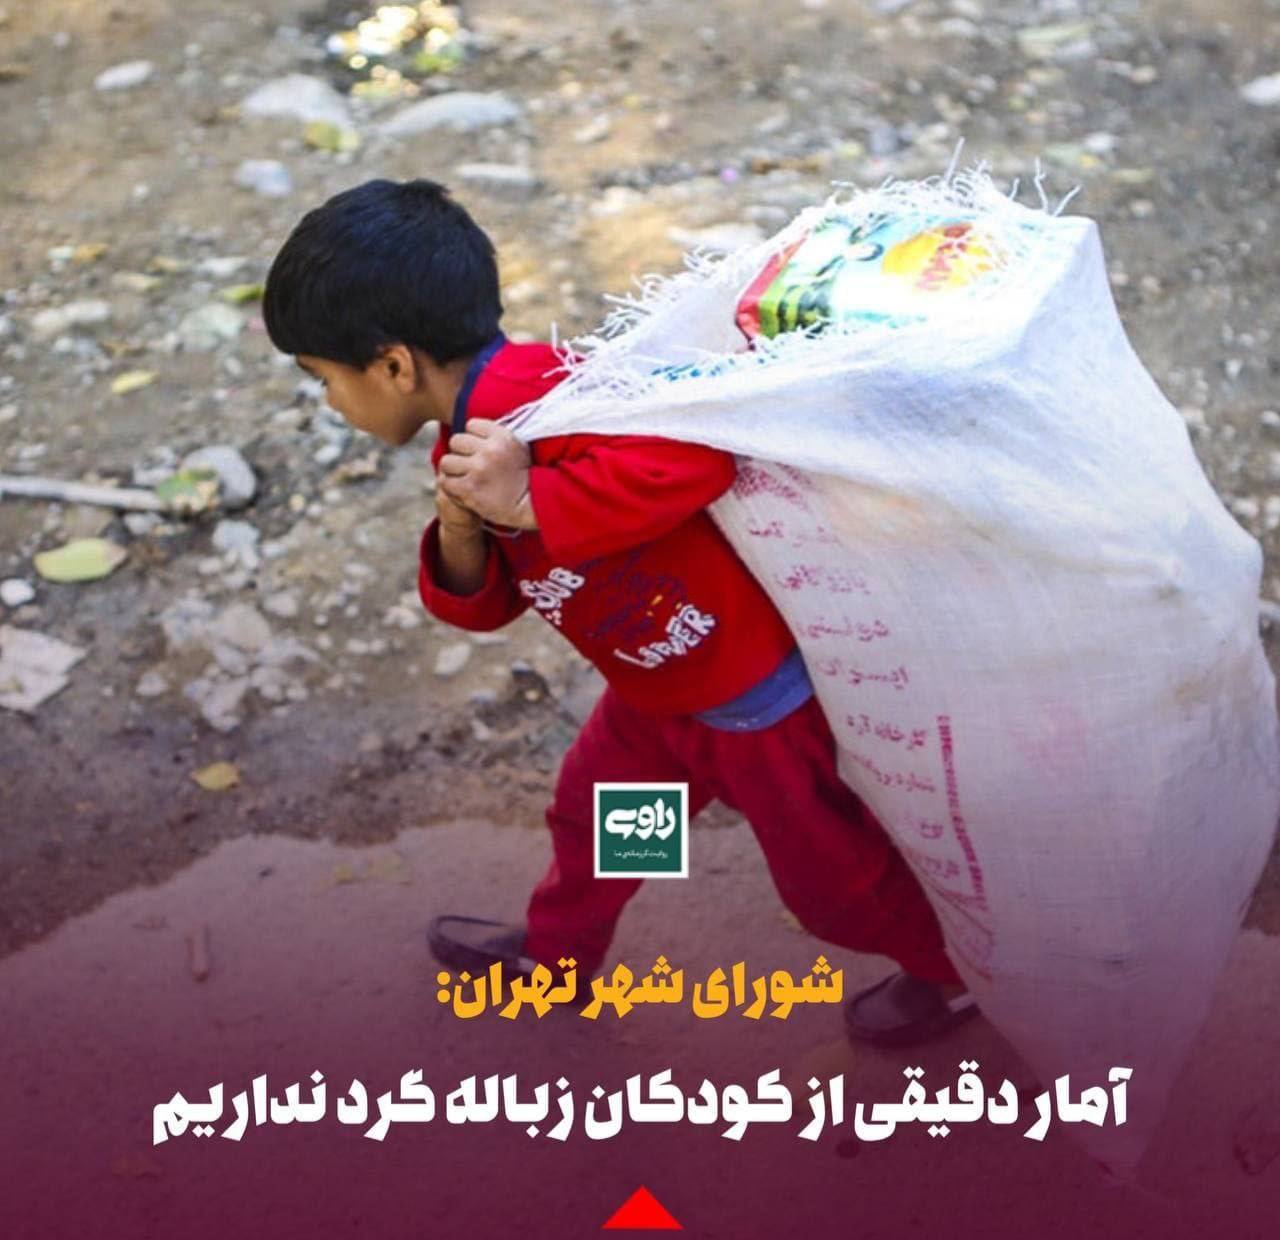 شورای شهر تهران: آمار دقیقی از کودکان زباله گرد نداریم